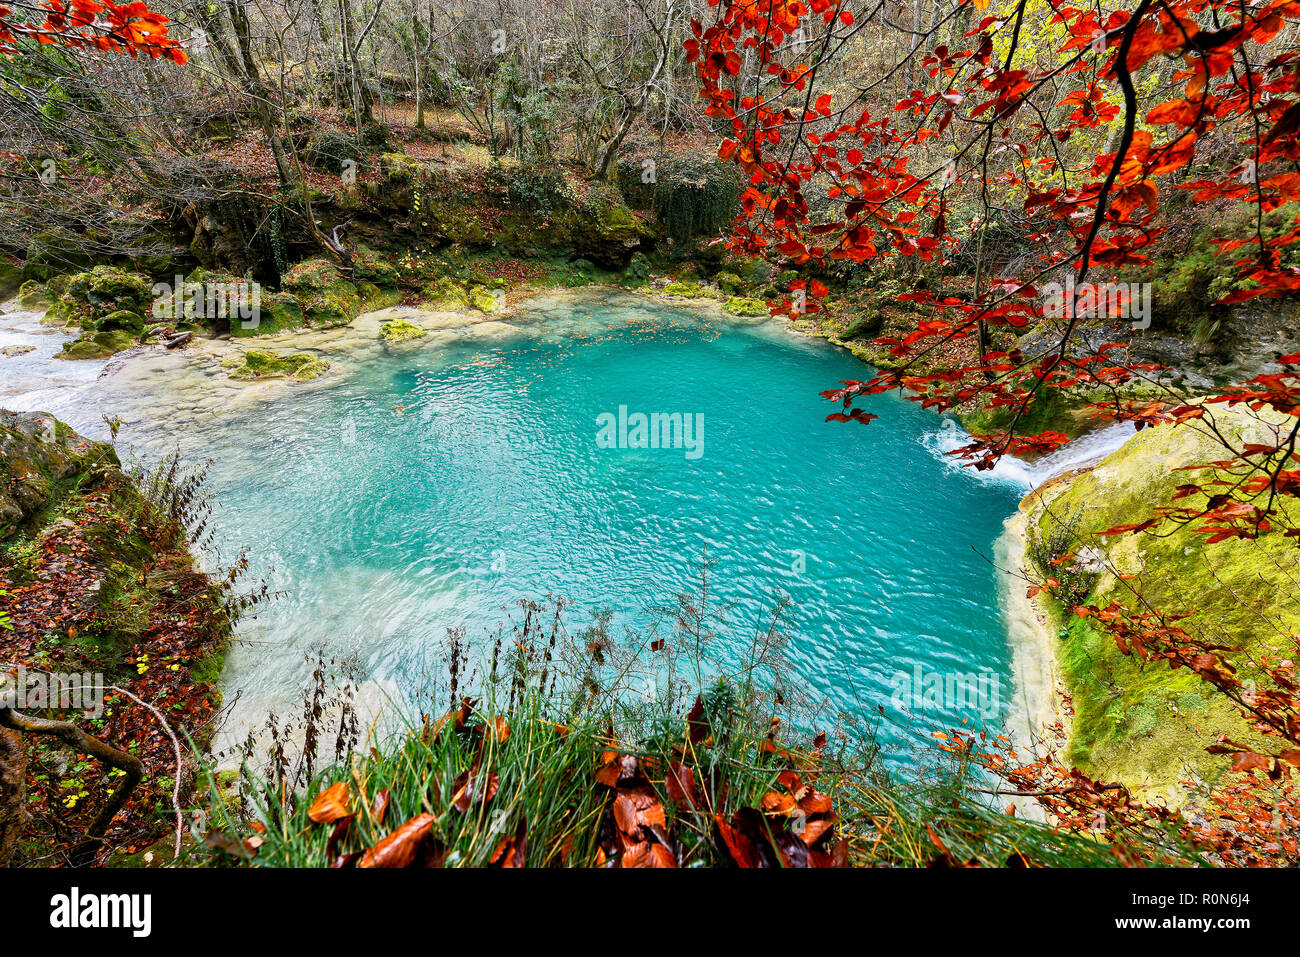 Türkisblaues Wasser in der Quelle der Urederra River Nationalpark Urbasa-Andia, Baquedano, Navarra, Spanien, Europa Stockfoto